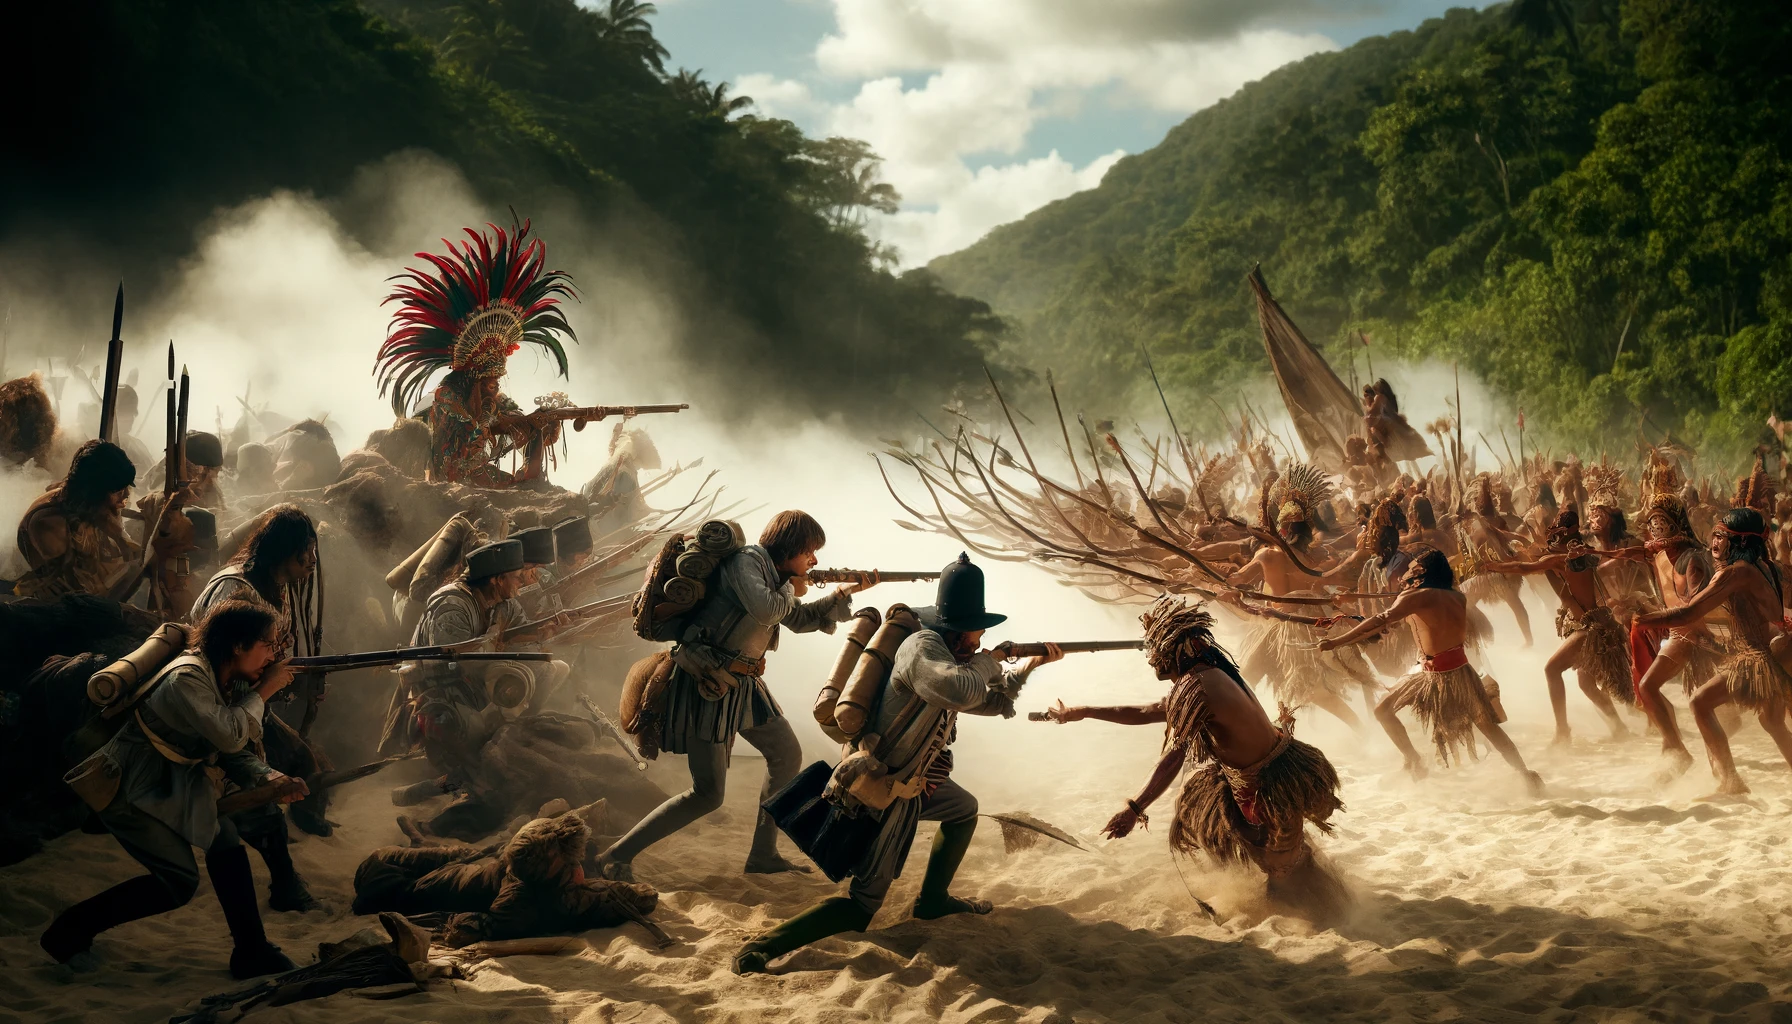 Guerreiros portugueses lutando contra indígenas brasileiros no século XVI